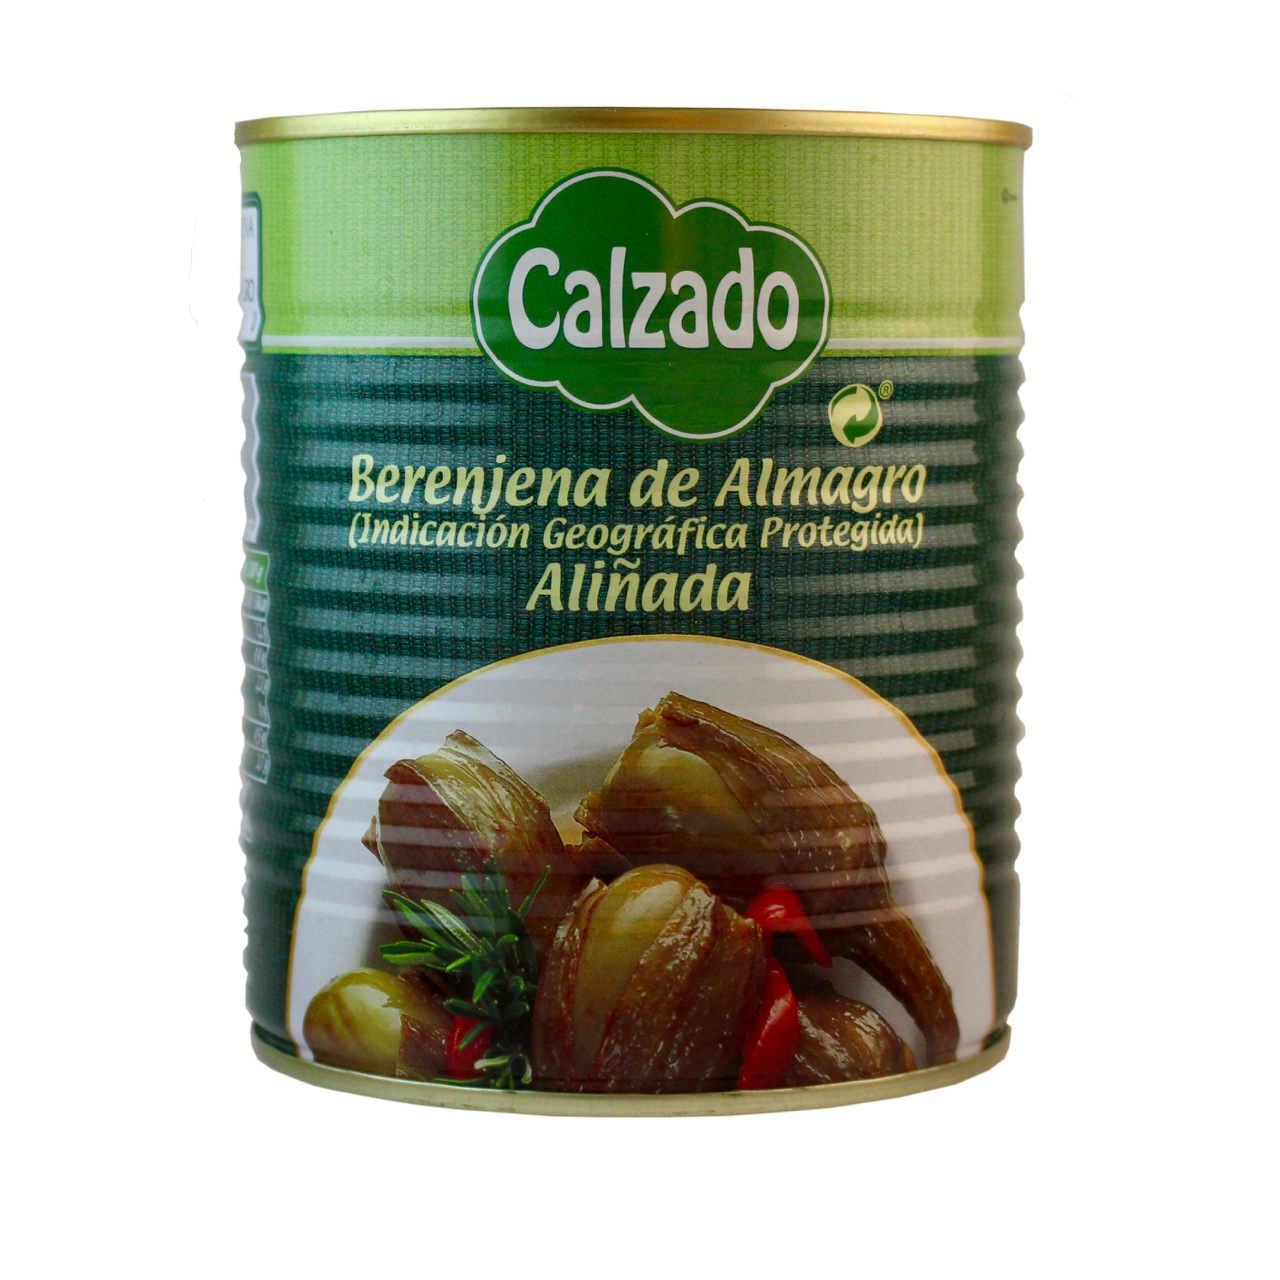 Eingelegte Melanzani (Berenjena de Almagro) von Calzado